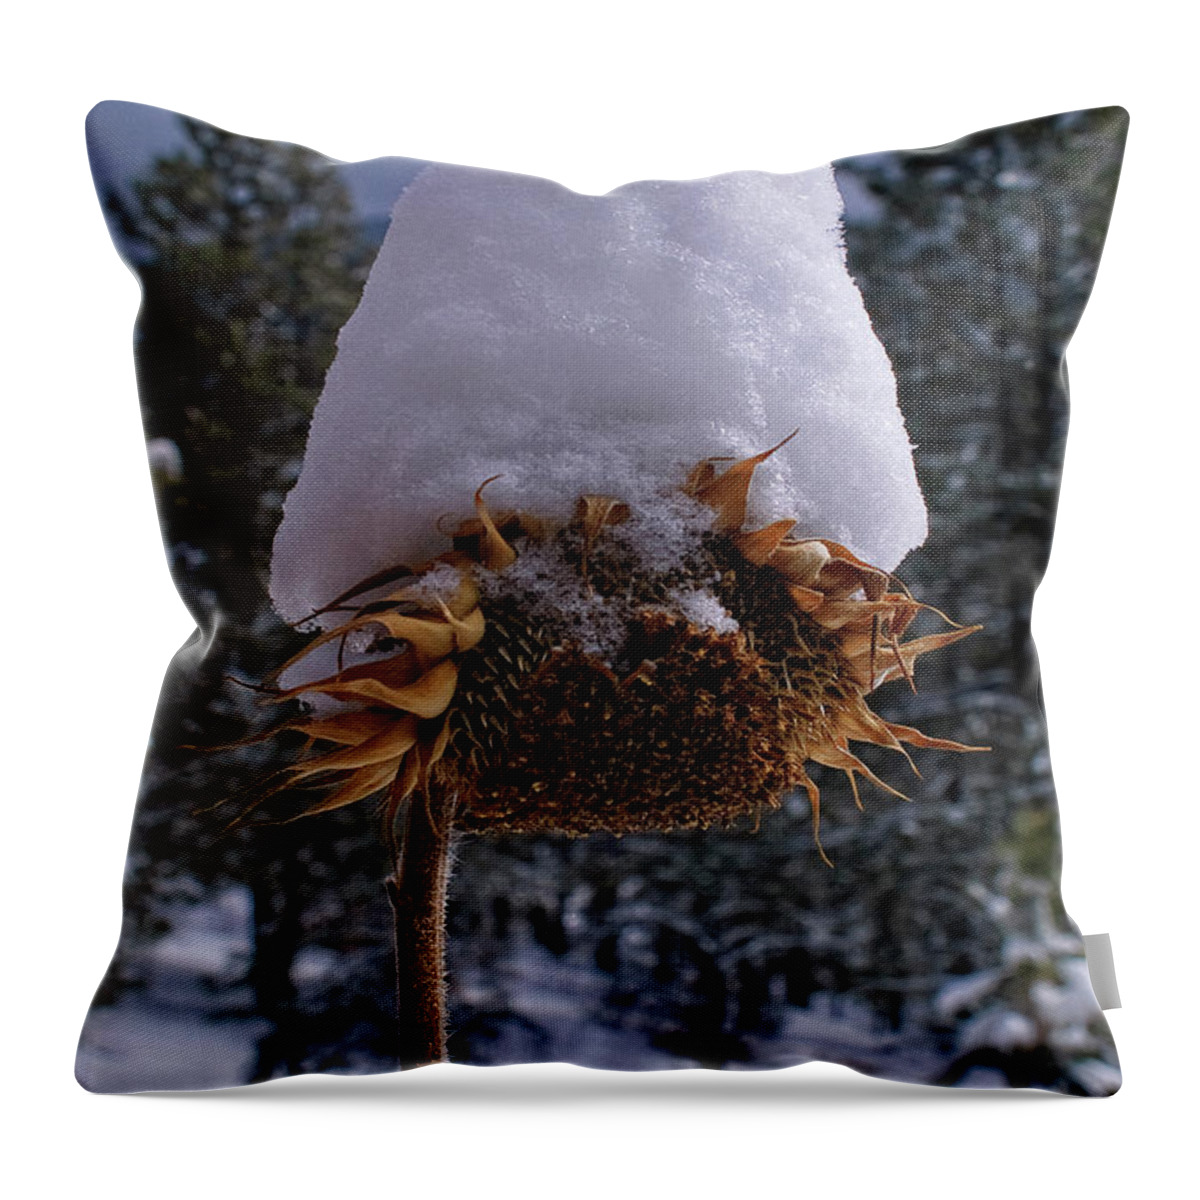 Desert Forest Garden Throw Pillow featuring the digital art Winter Coat by Becky Titus